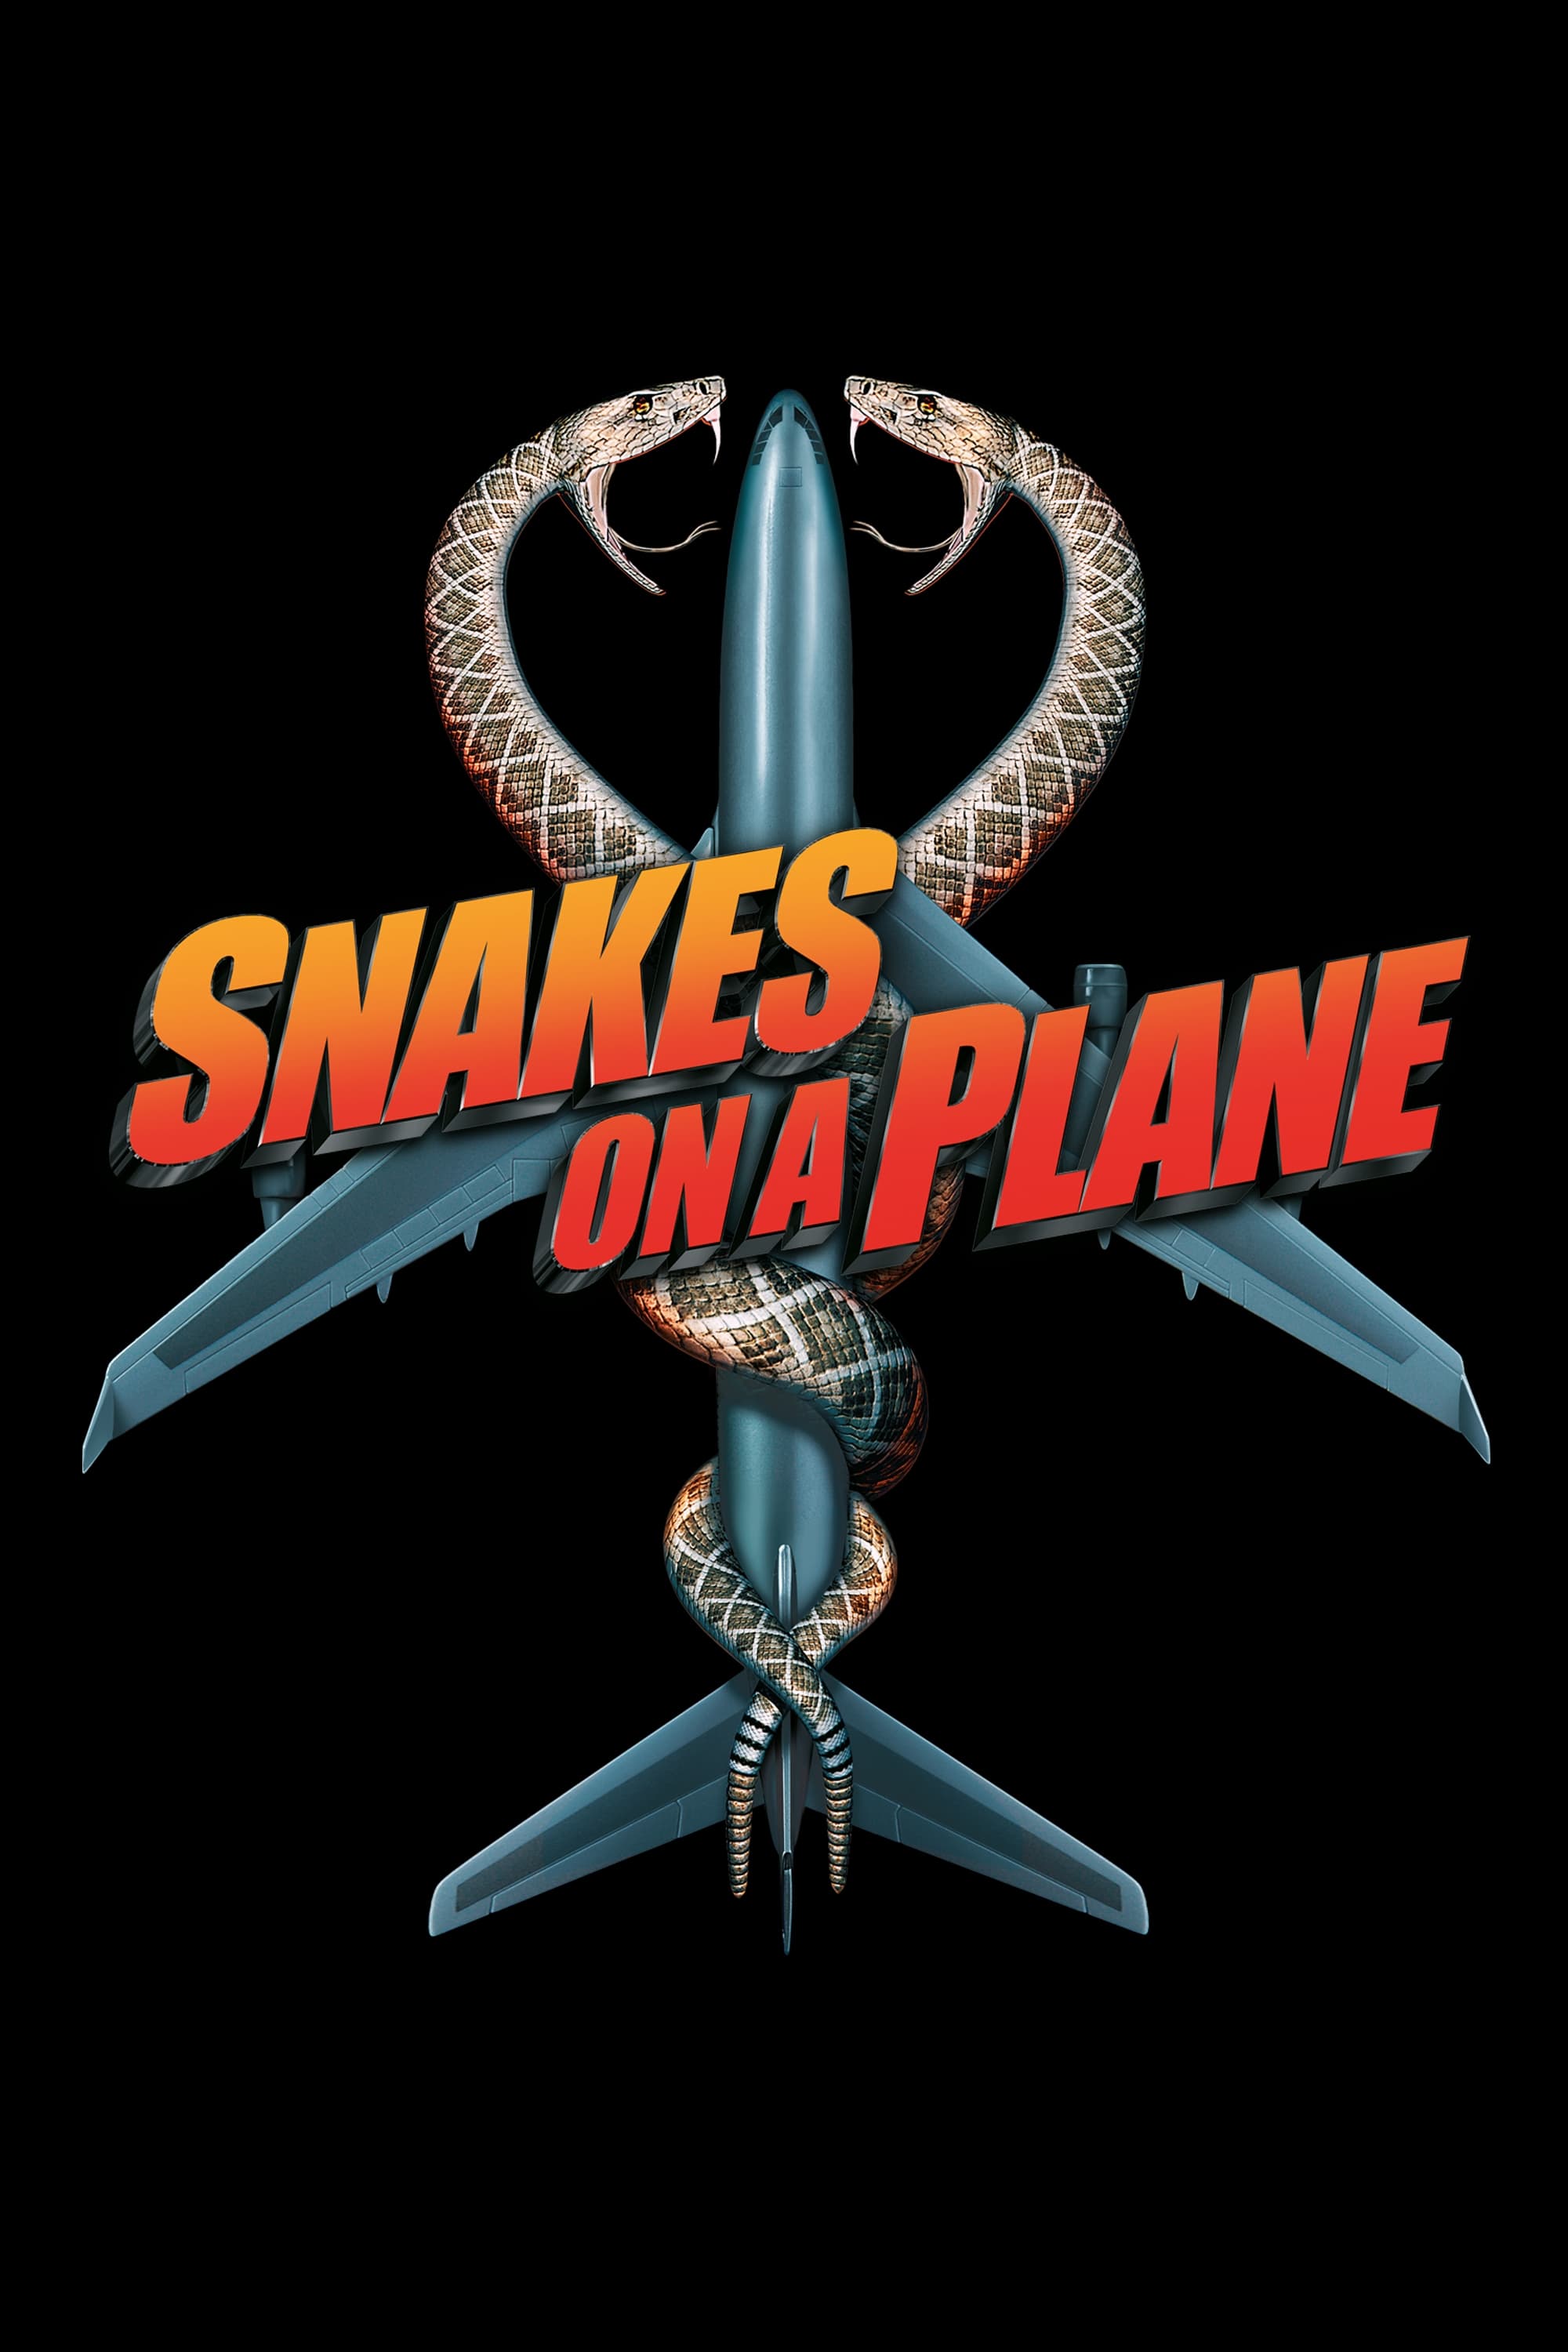 Serpientes en el avión